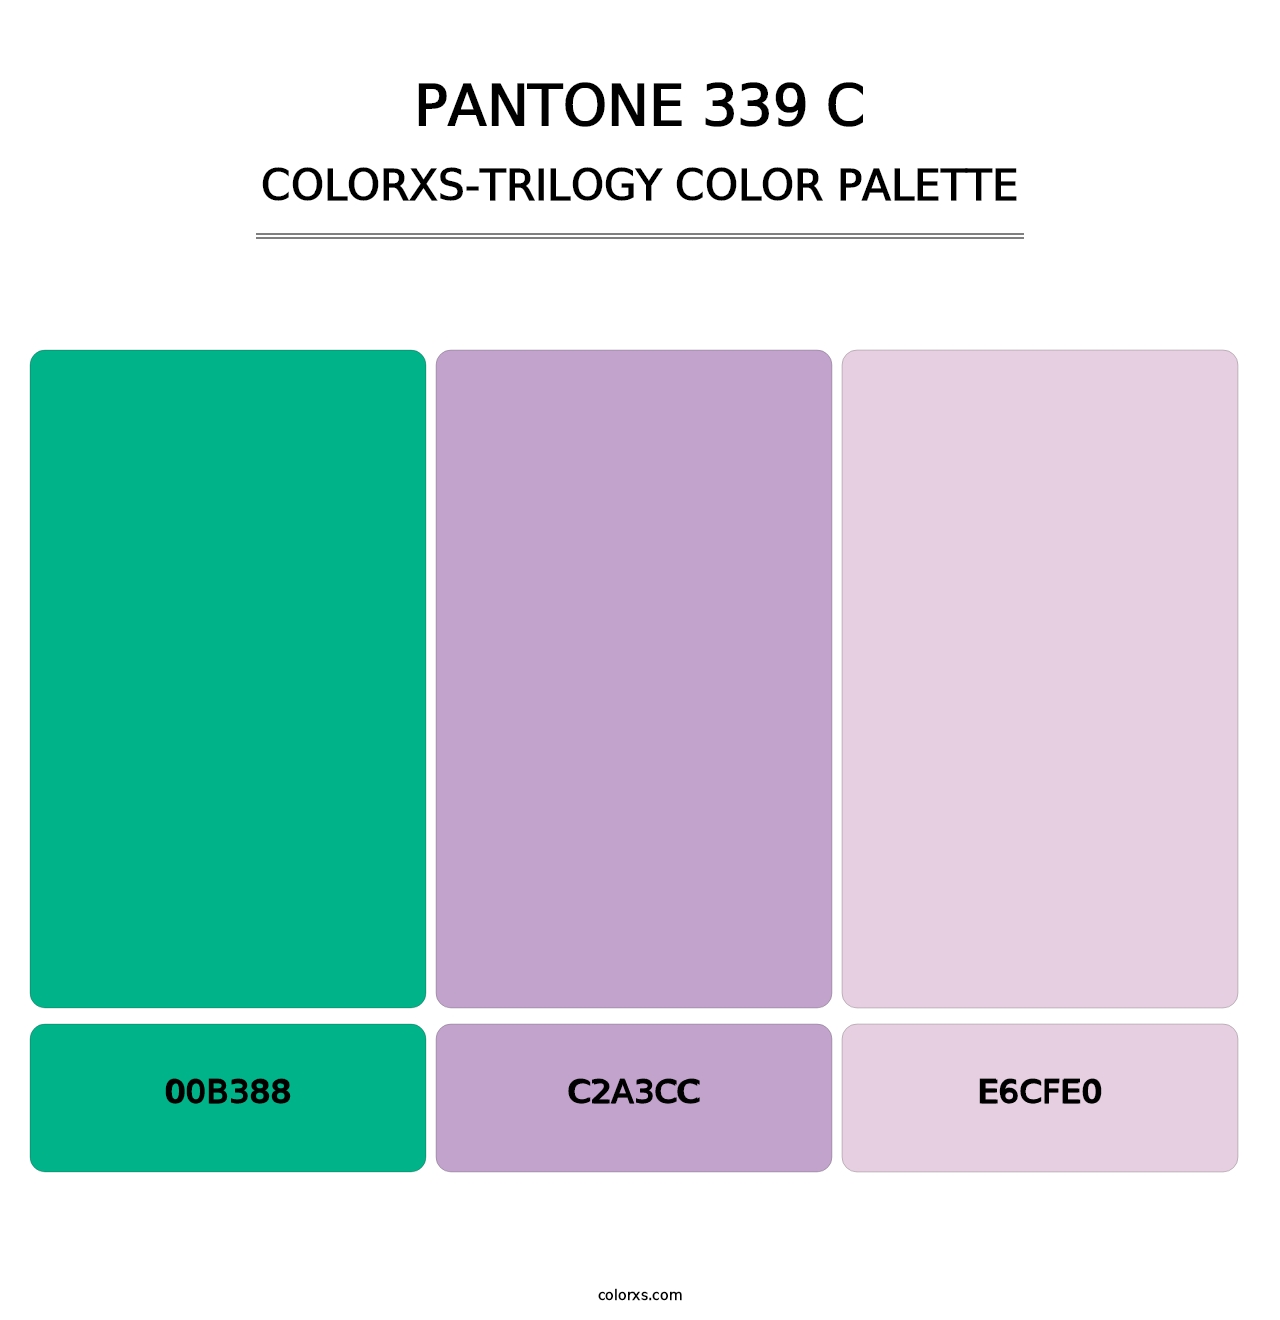 PANTONE 339 C - Colorxs Trilogy Palette